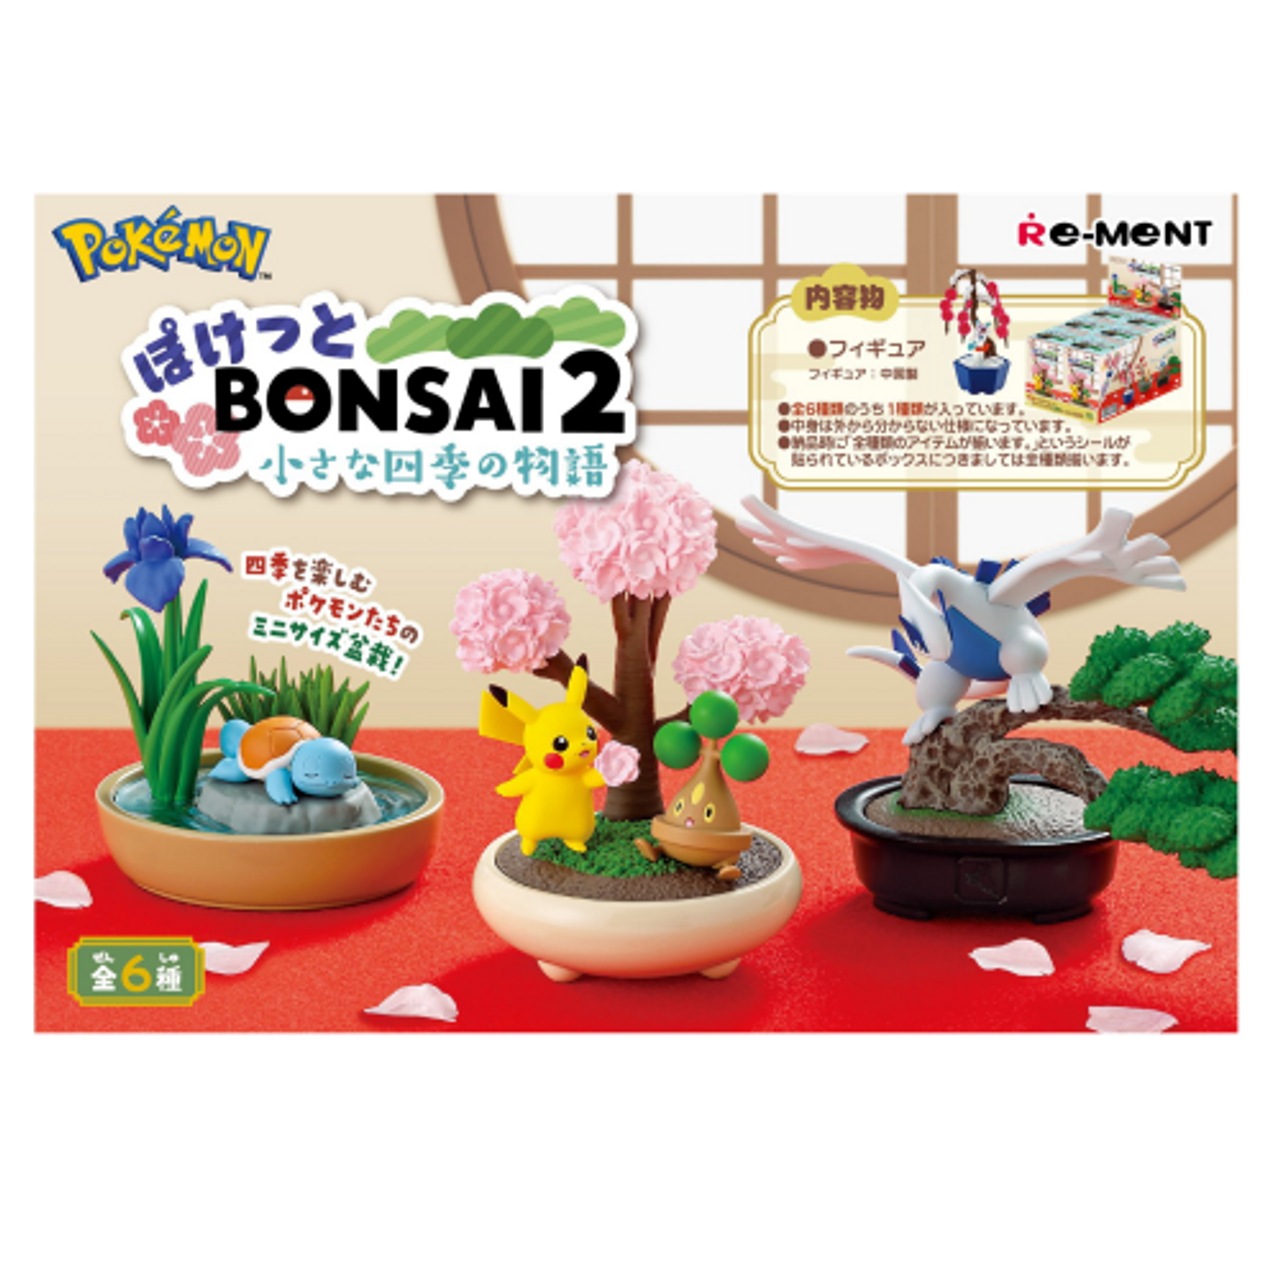 Re-Ment Pokemon Pocket Bonsai 2-Single Box (Random)-Re-Ment-Ace Cards & Collectibles